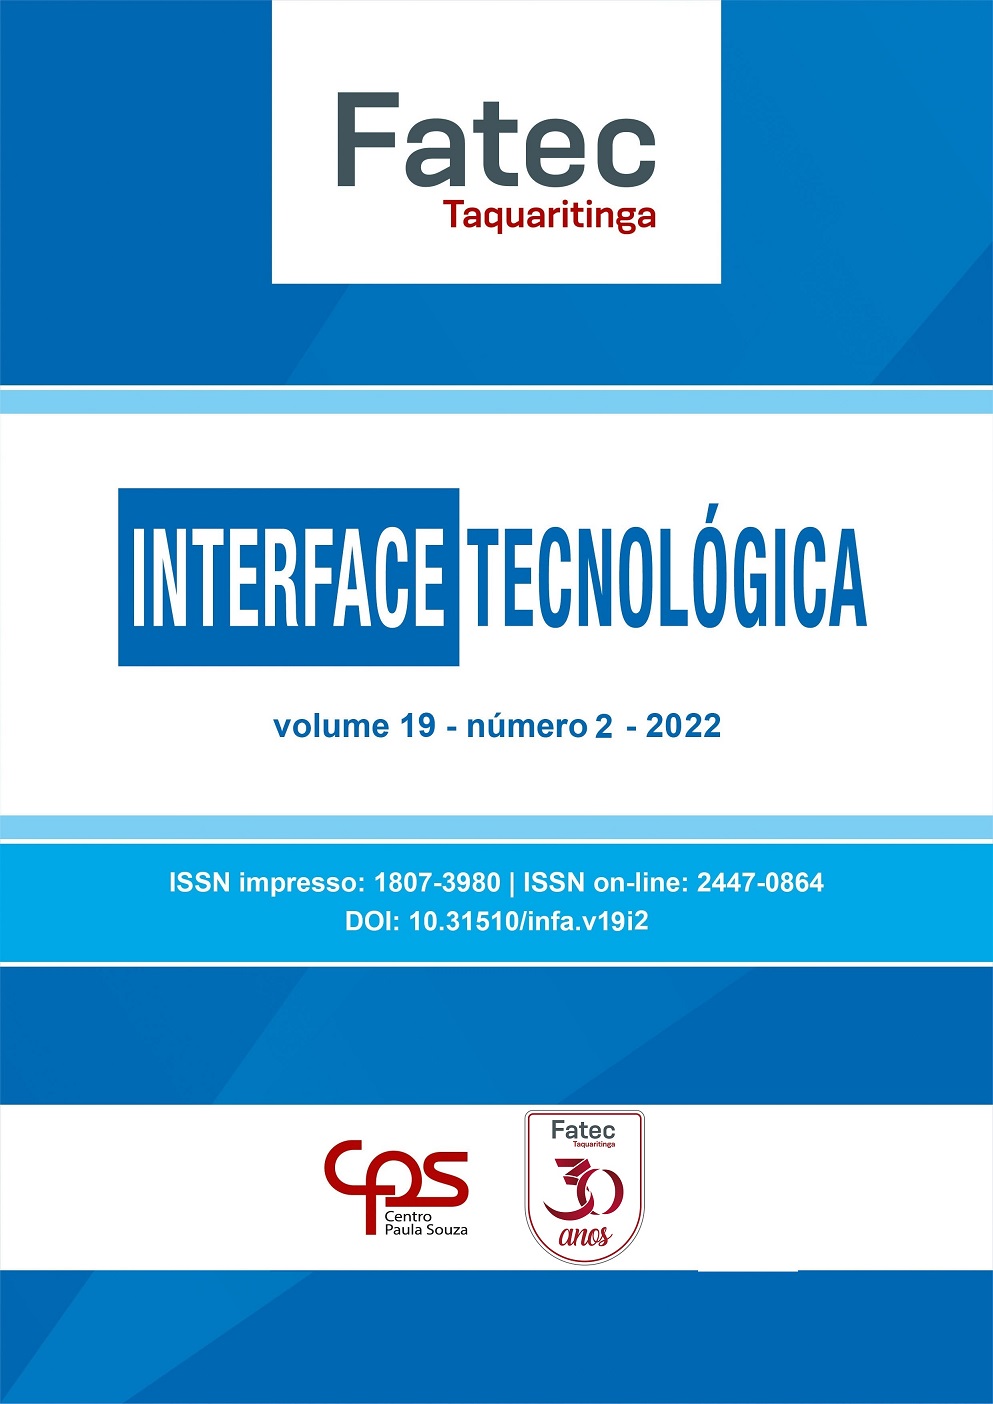 					Visualizar v. 19 n. 2 (2022): Revista Interface Tecnológica
				